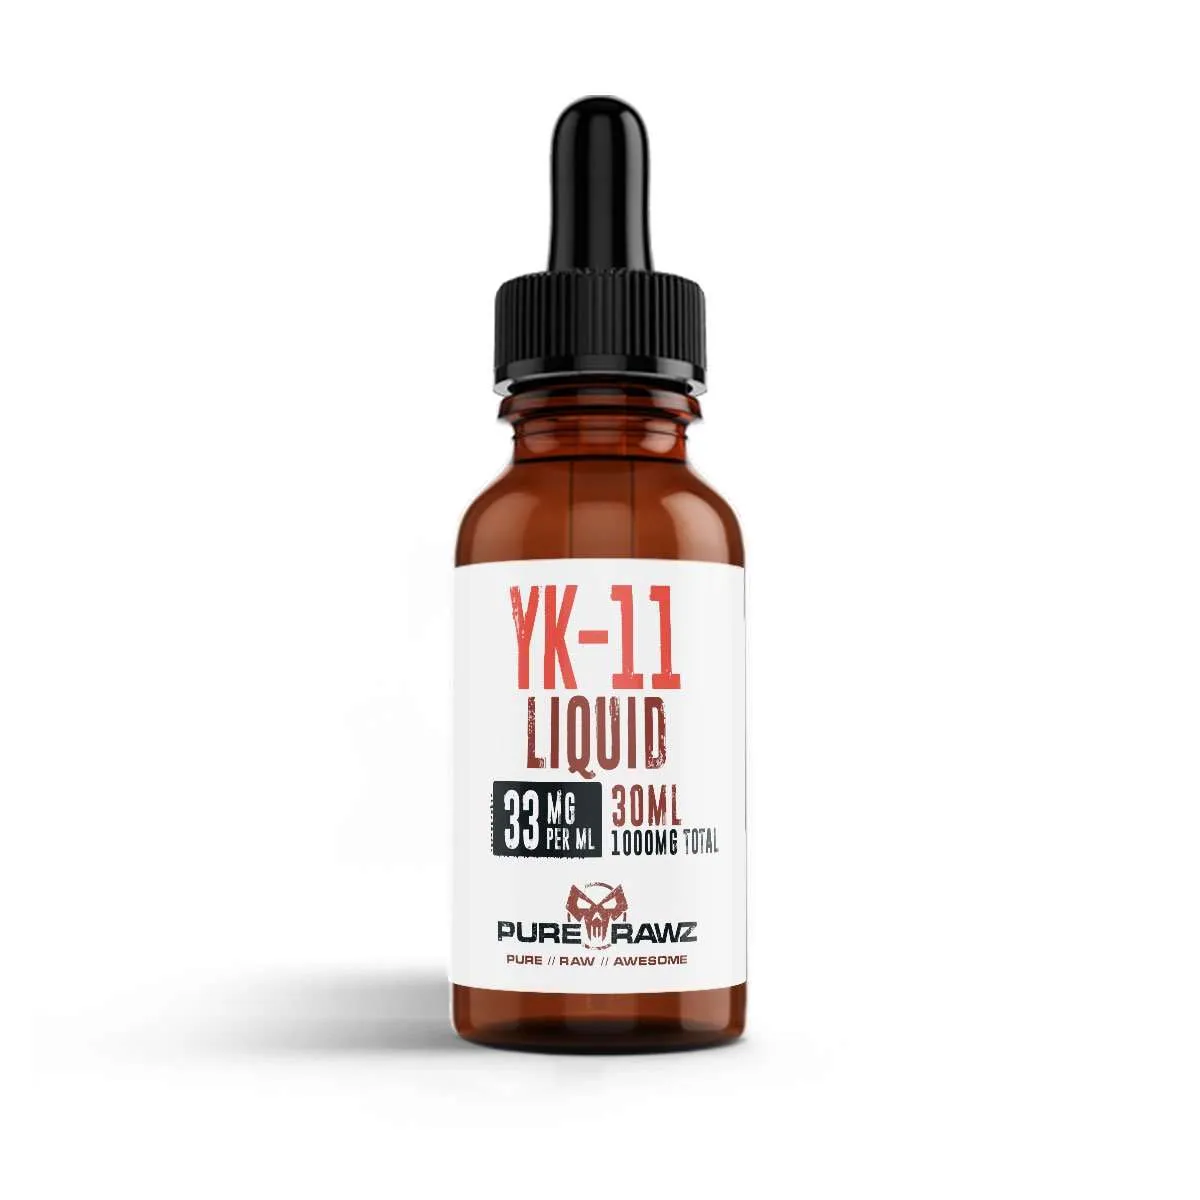 YK11 for Sale (Buy Myostine) | Liquid Vials